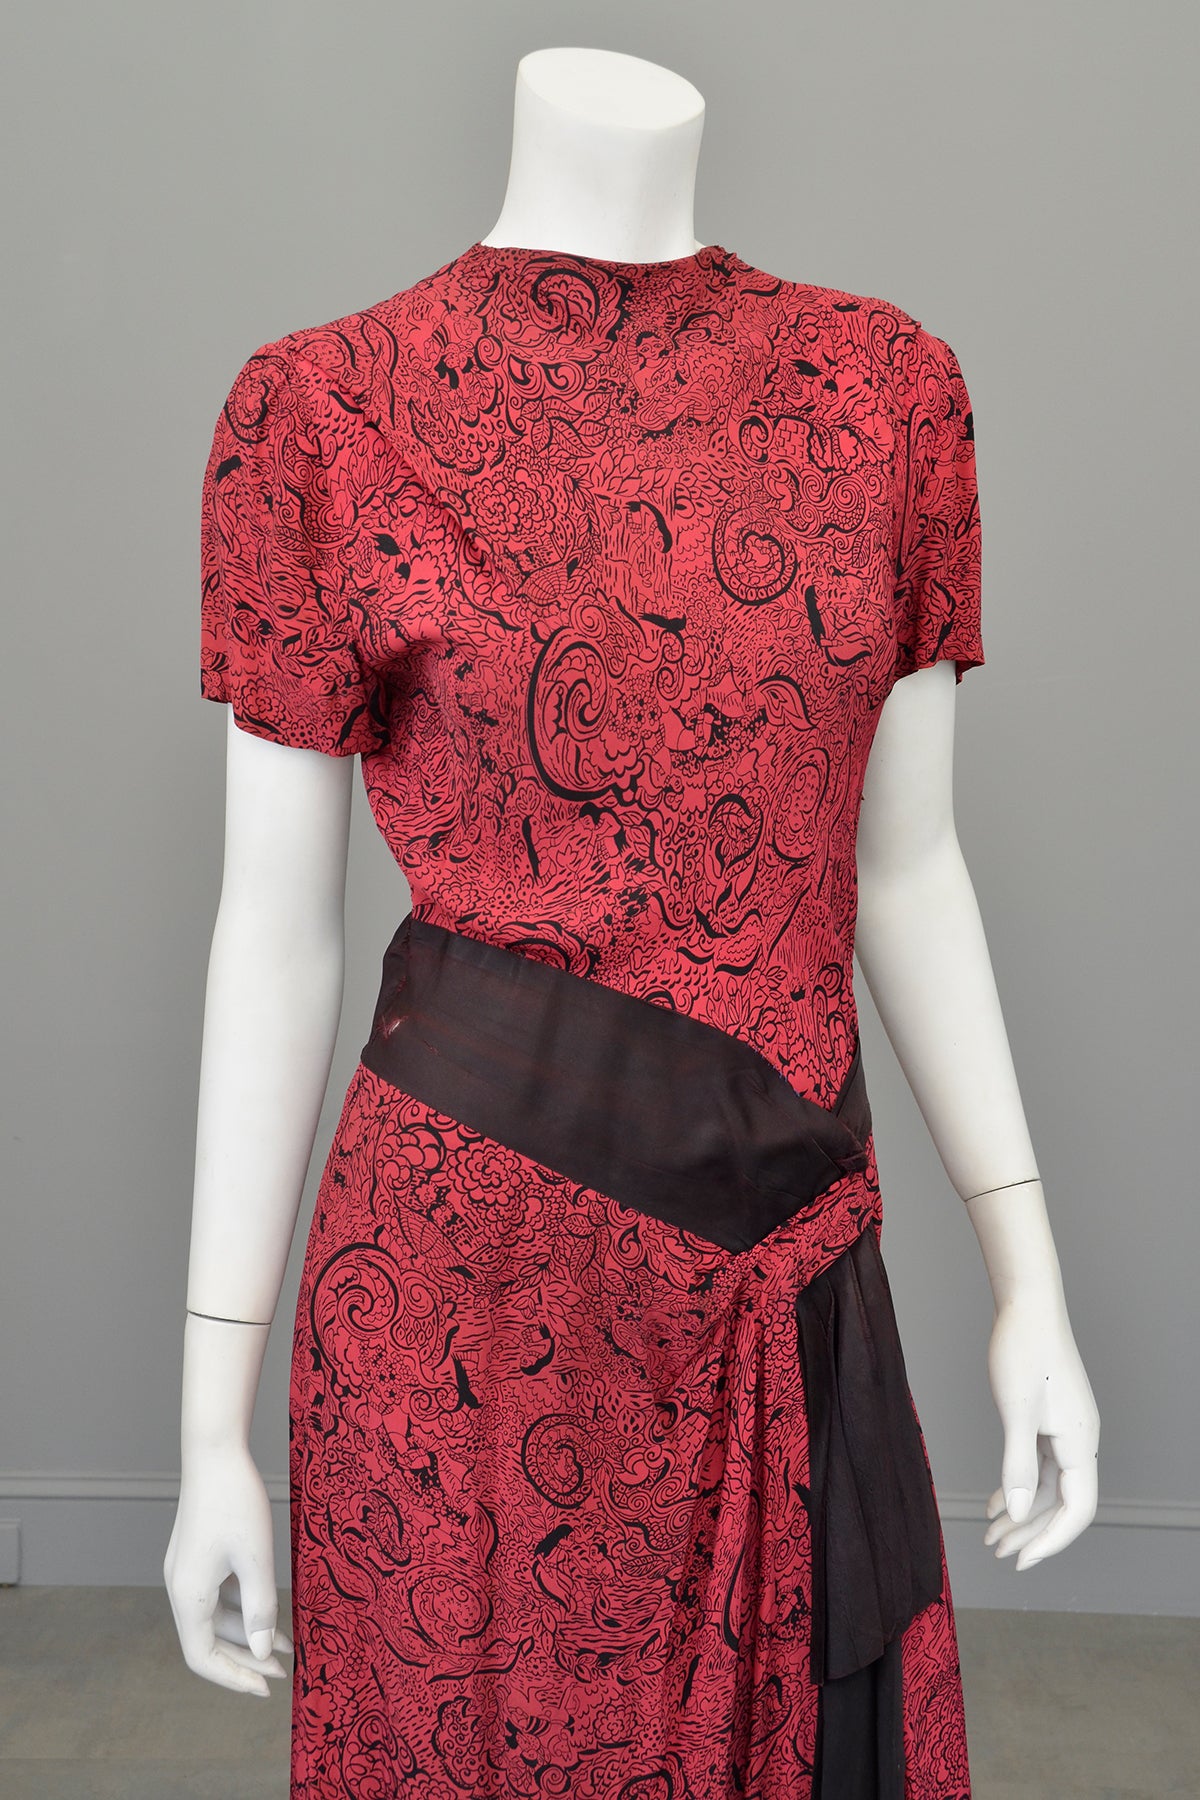 1940s Novelty Print Egyptian Revival Dress Red Black TLC